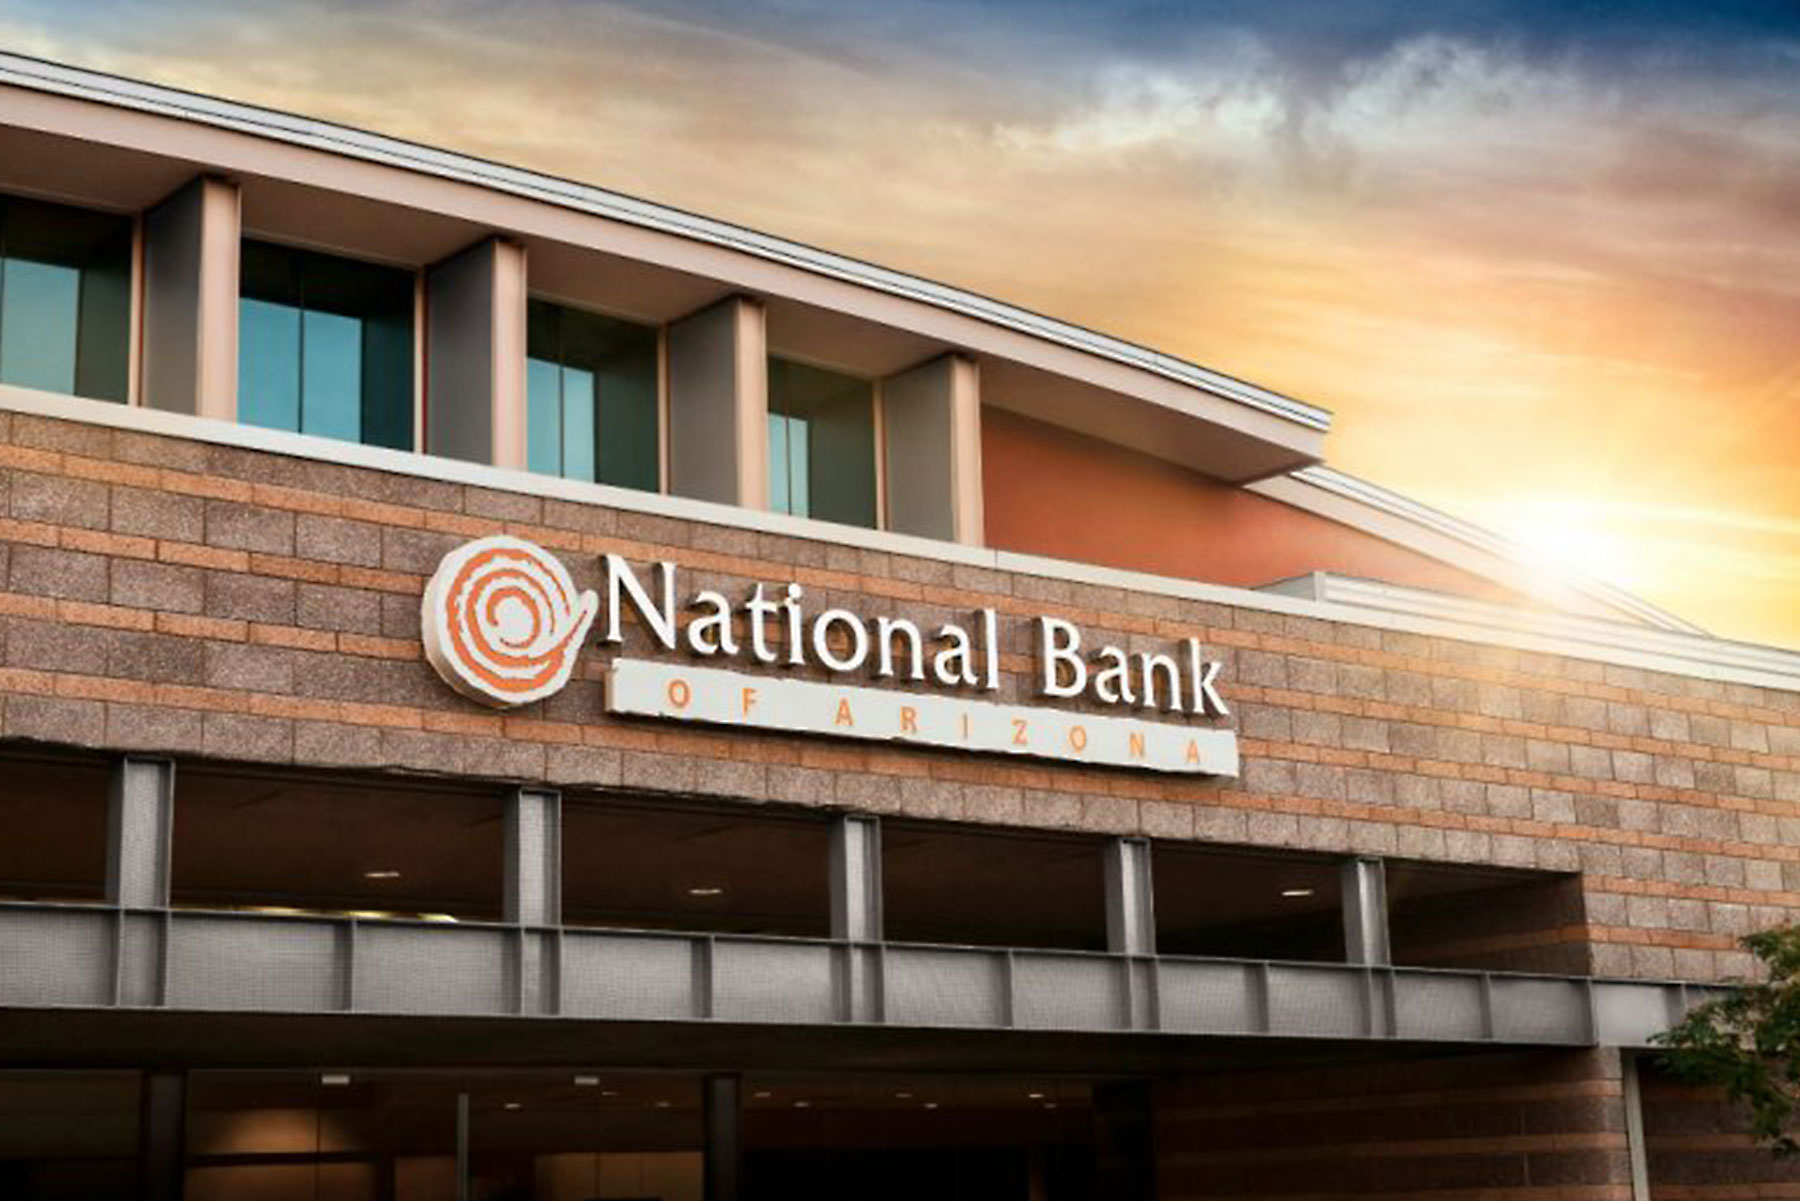 nationalbankofaz-signage